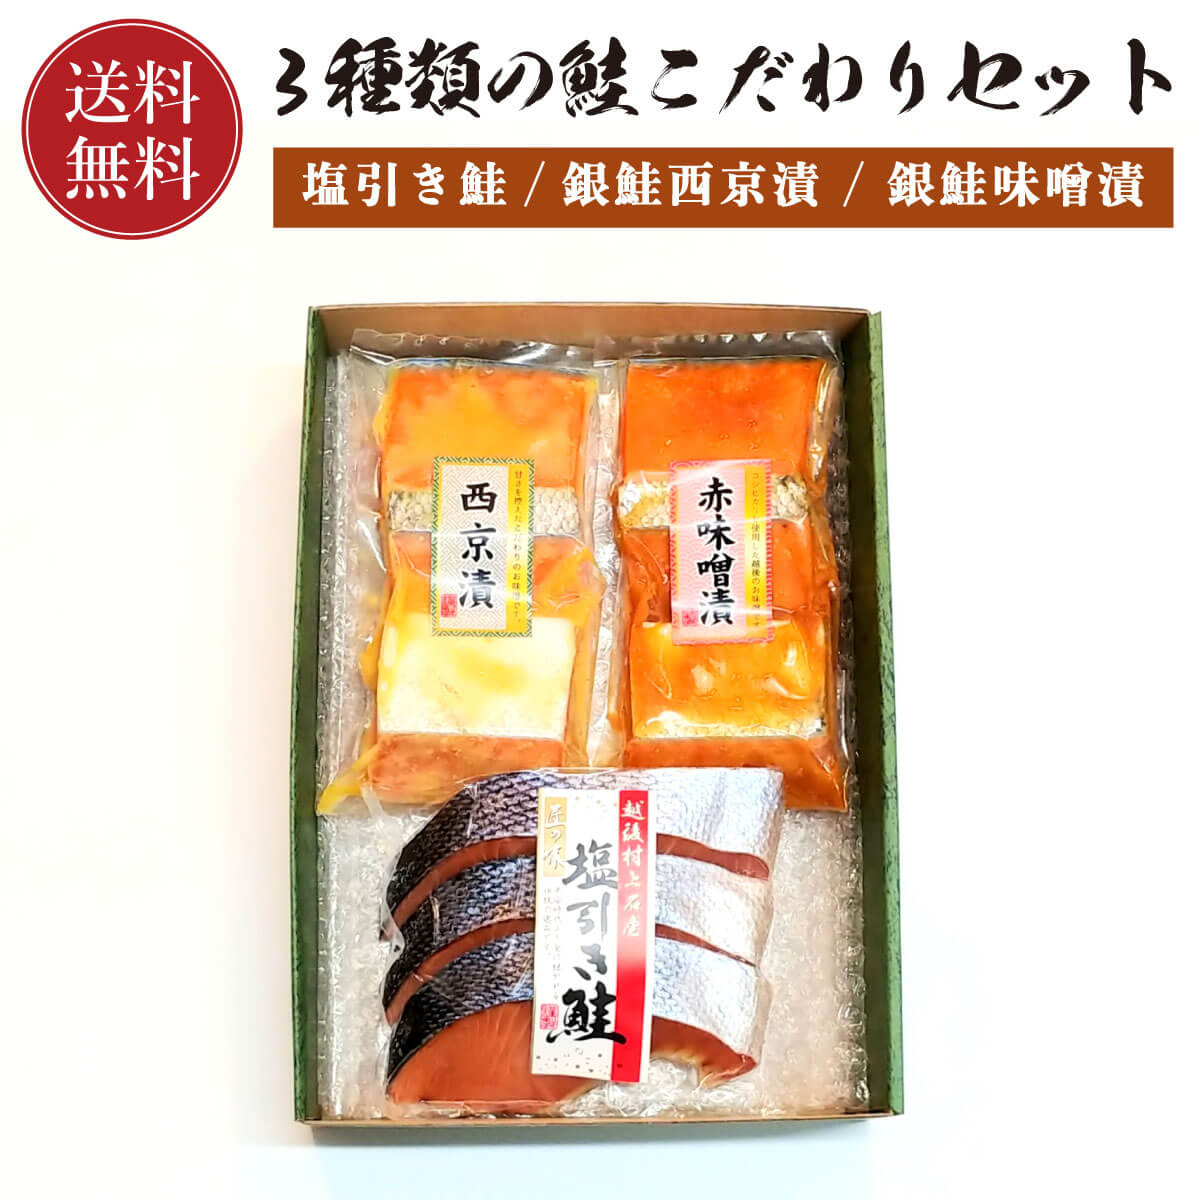 【送料無料】鮭 こだわりセット ( 塩引き鮭 / 銀鮭味噌漬